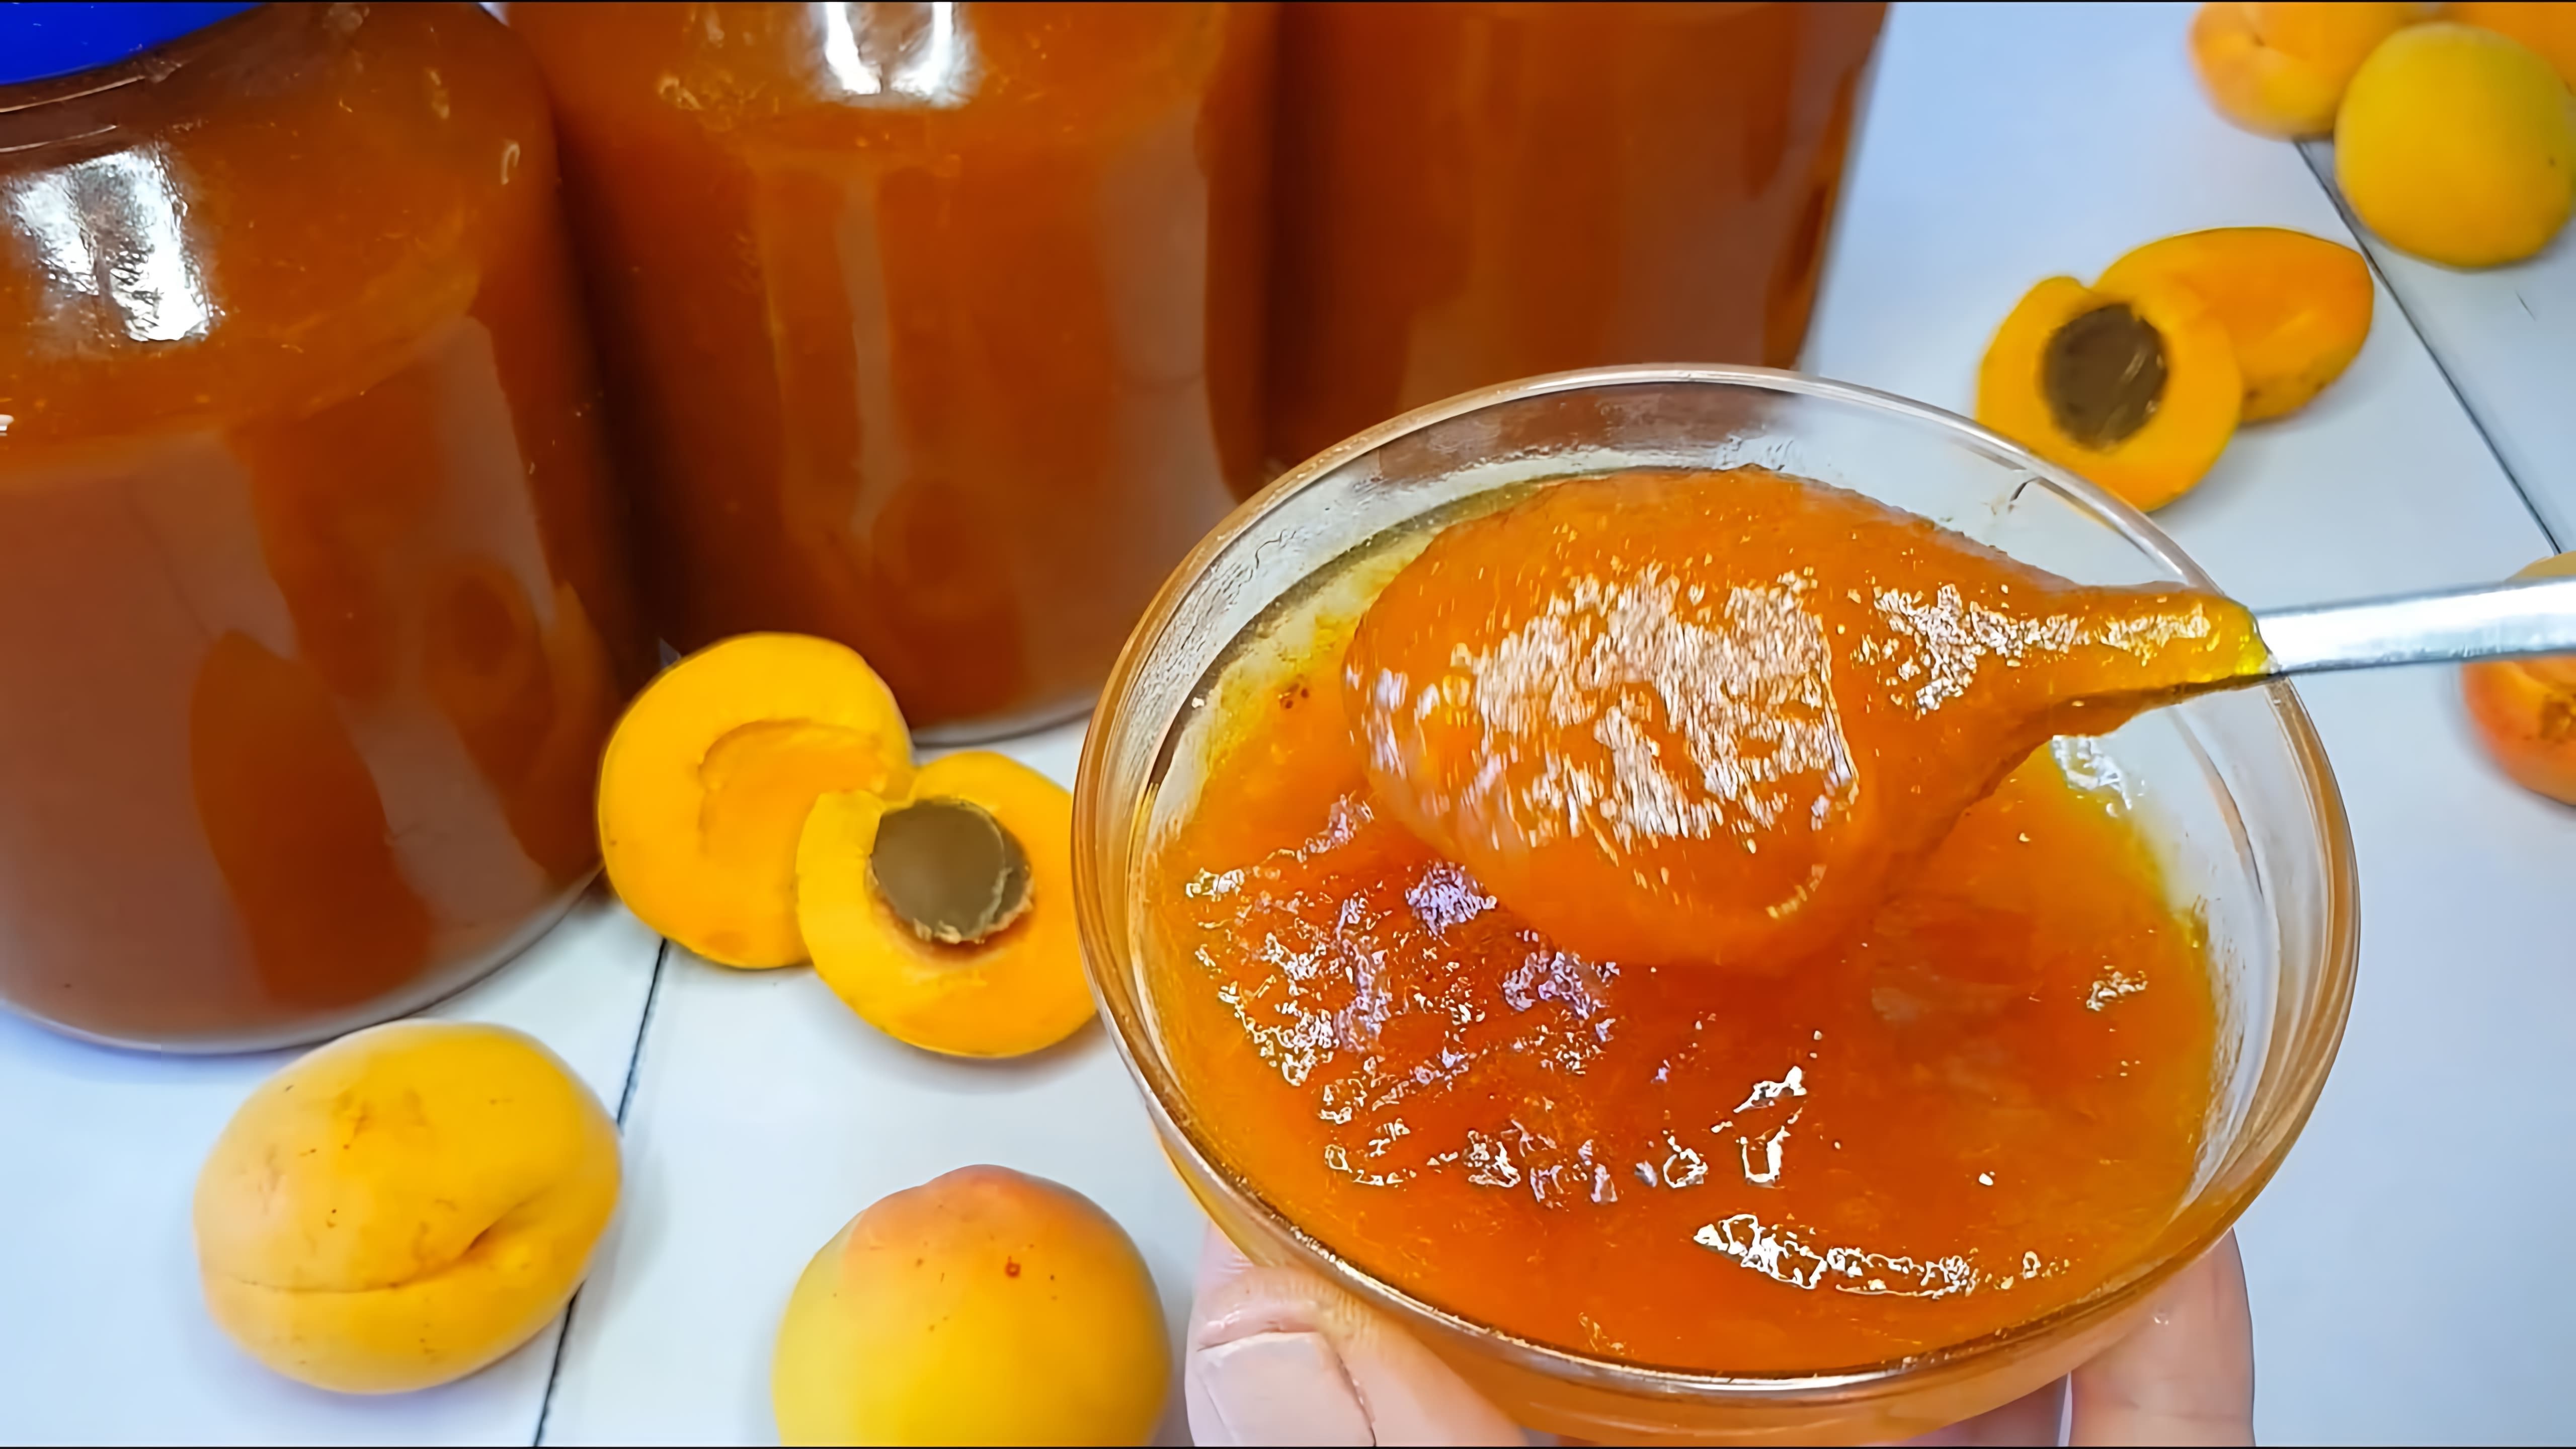 В этом видео демонстрируется процесс приготовления густого абрикосового повидла без использования загустителей, таких как пектин или желатин